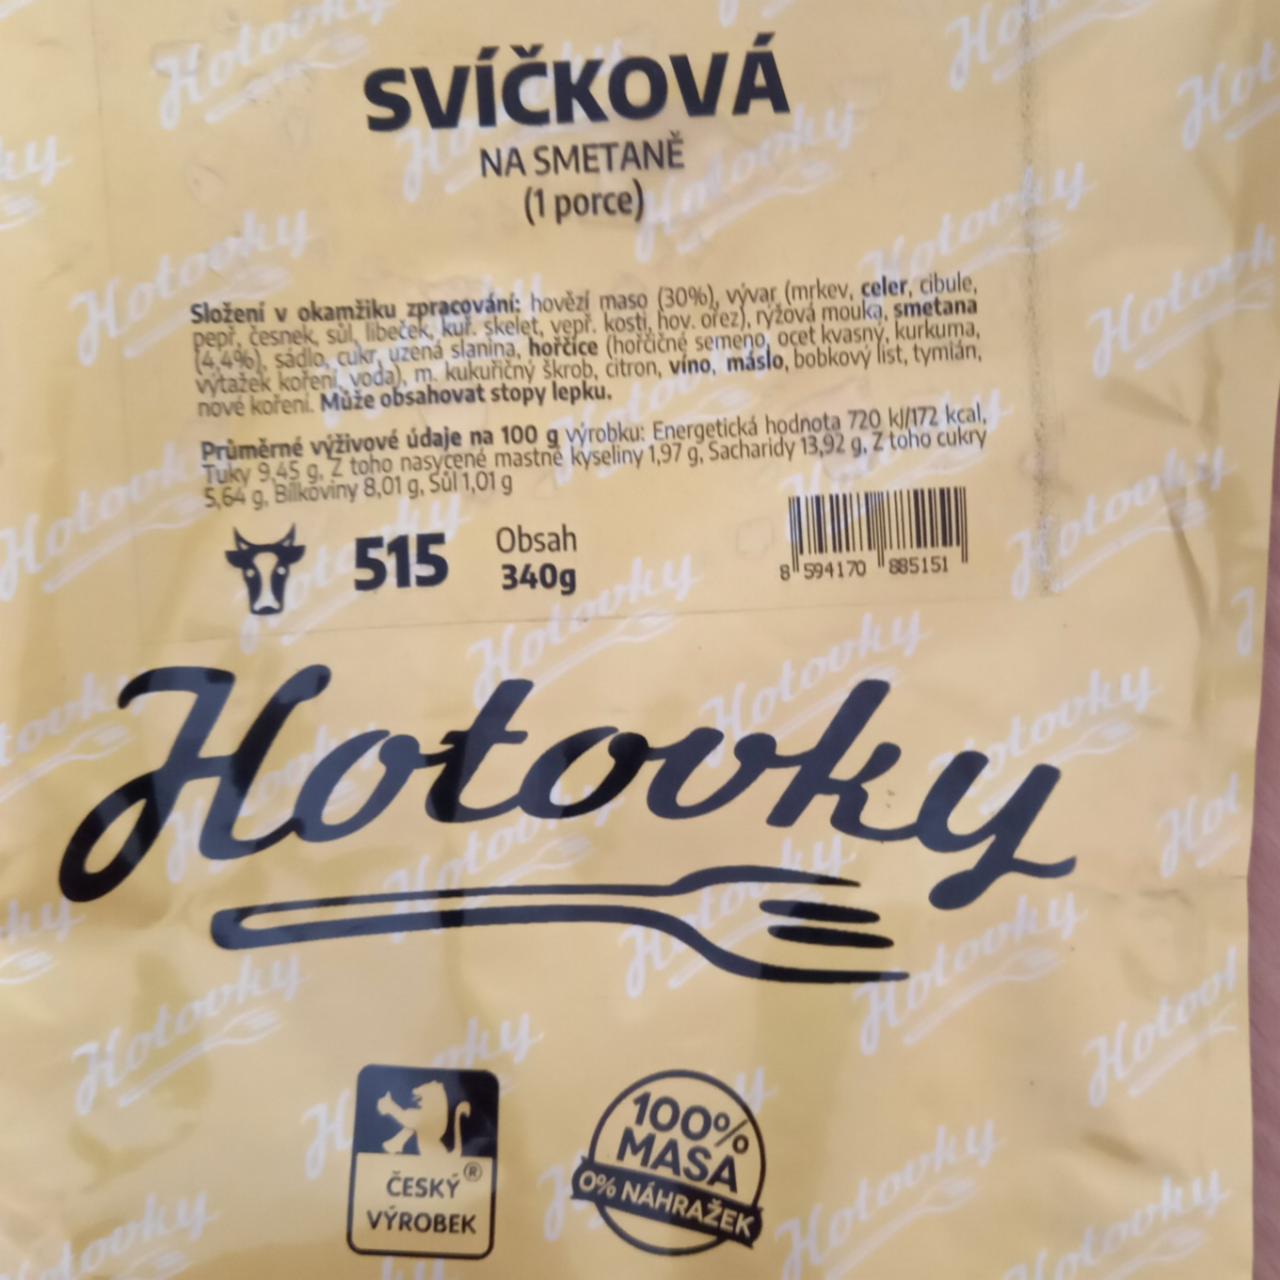 Fotografie - Svíčková na smetaně Hotovky.cz